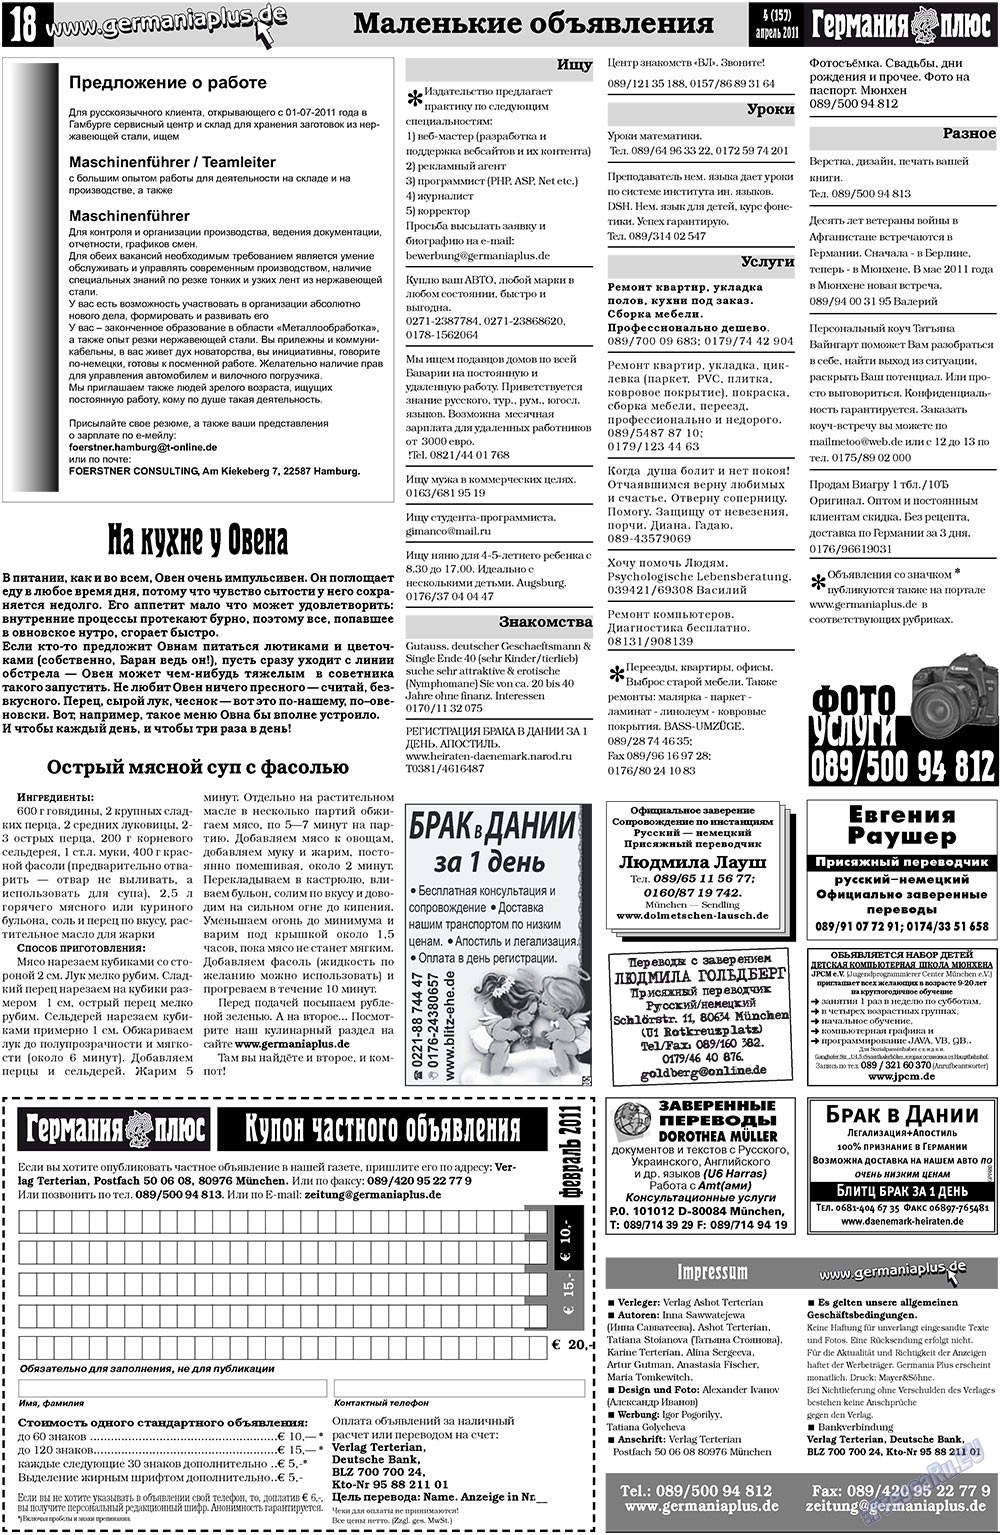 Германия плюс (газета). 2011 год, номер 4, стр. 18